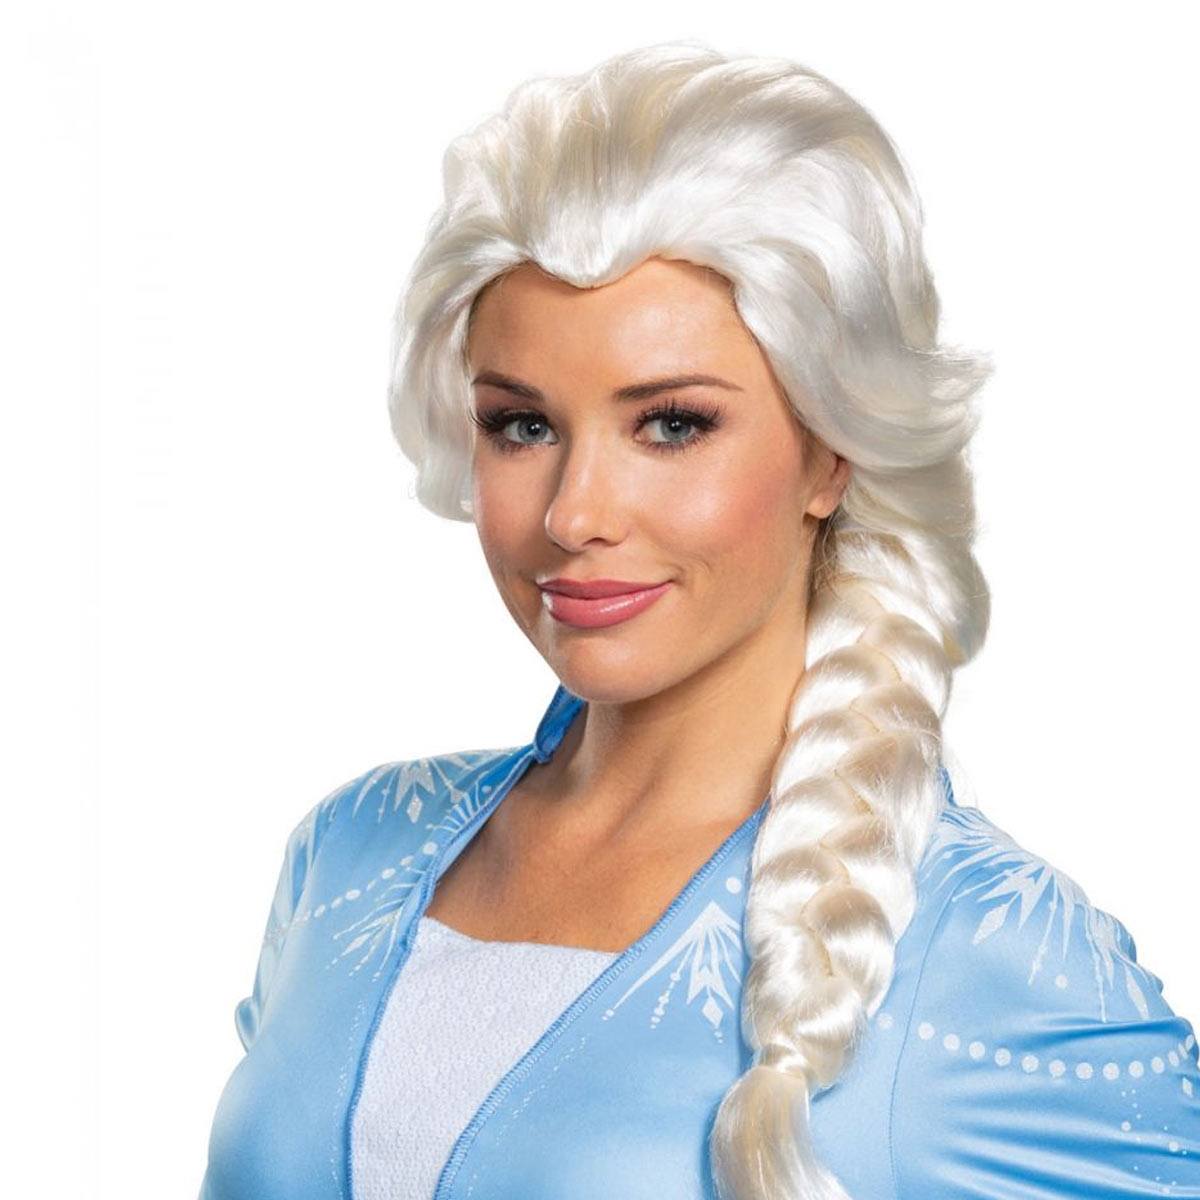 送料無料 アナと雪の女王 2 エルサ ウイッグ かつら アナ雪 キッズ コスプレ 衣装 仮装 コスチューム Frozen 2